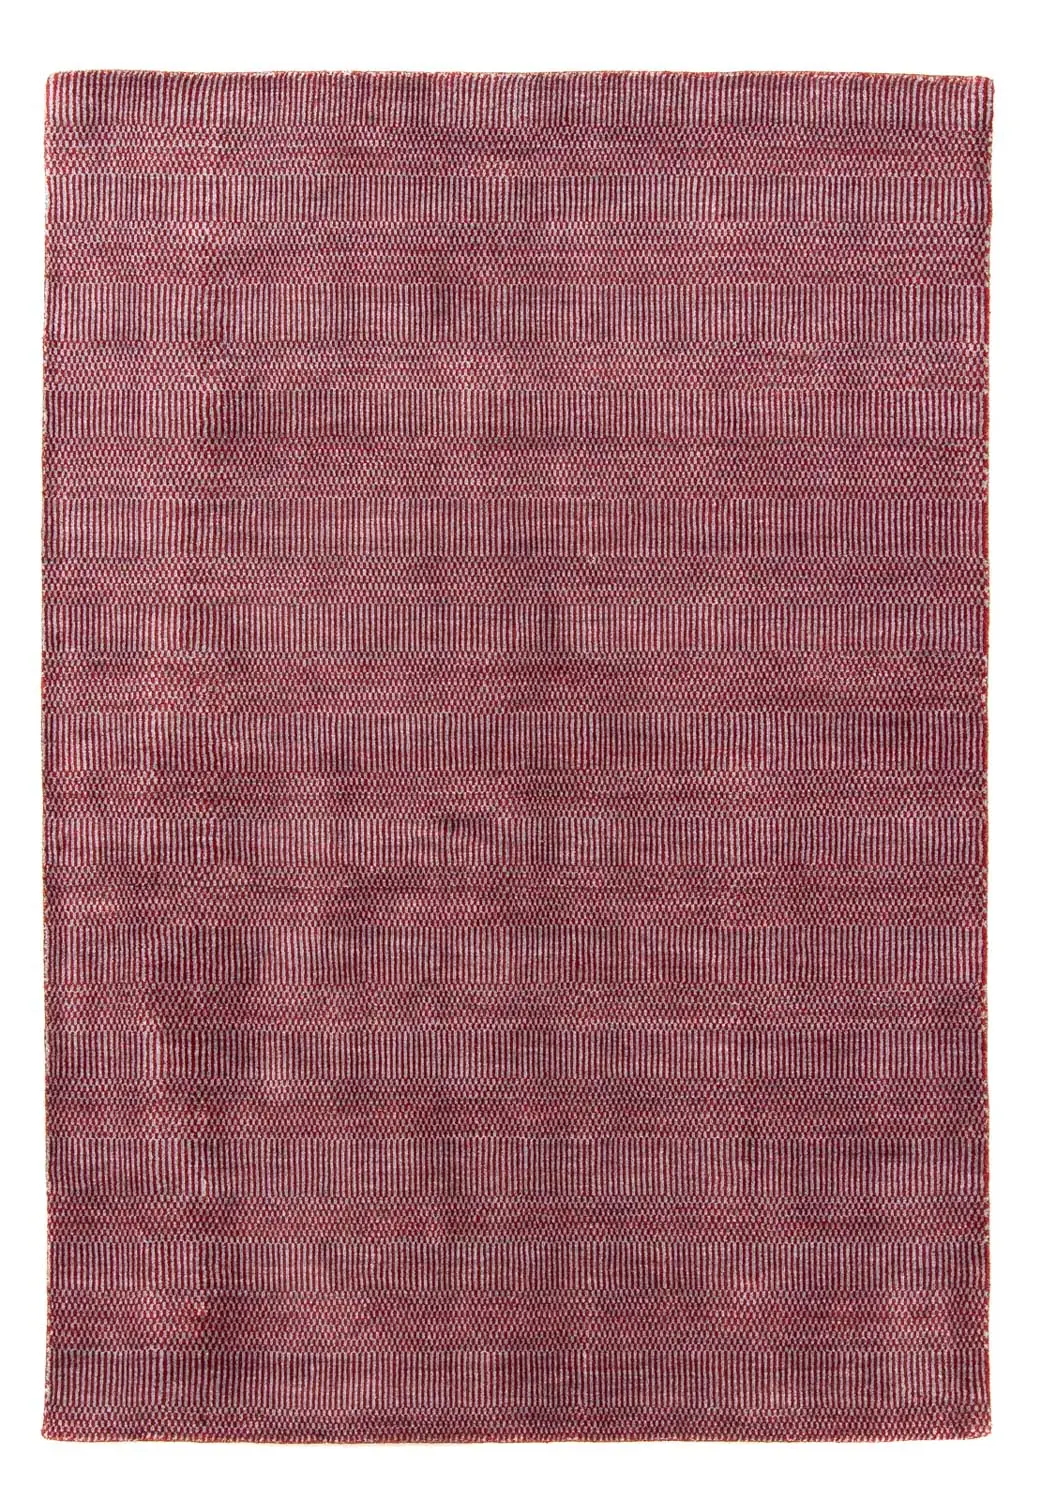 Designer Teppich - 201 x 142 cm - rot | Kurzflorteppiche